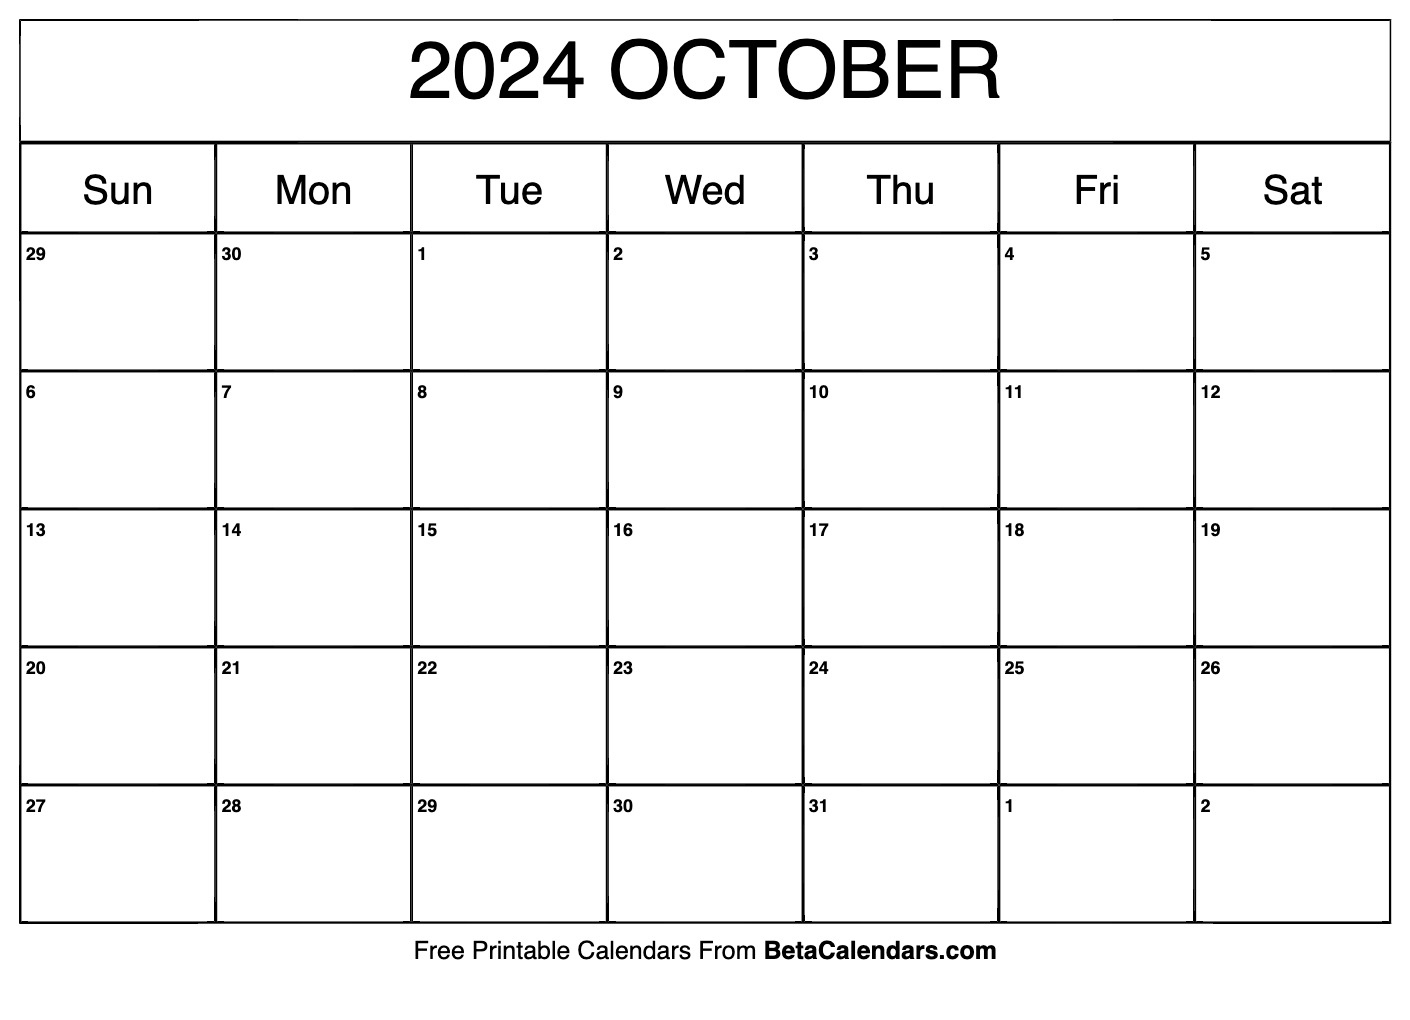 Free Printable October 2024 Calendar | October Printable Calendar 2024